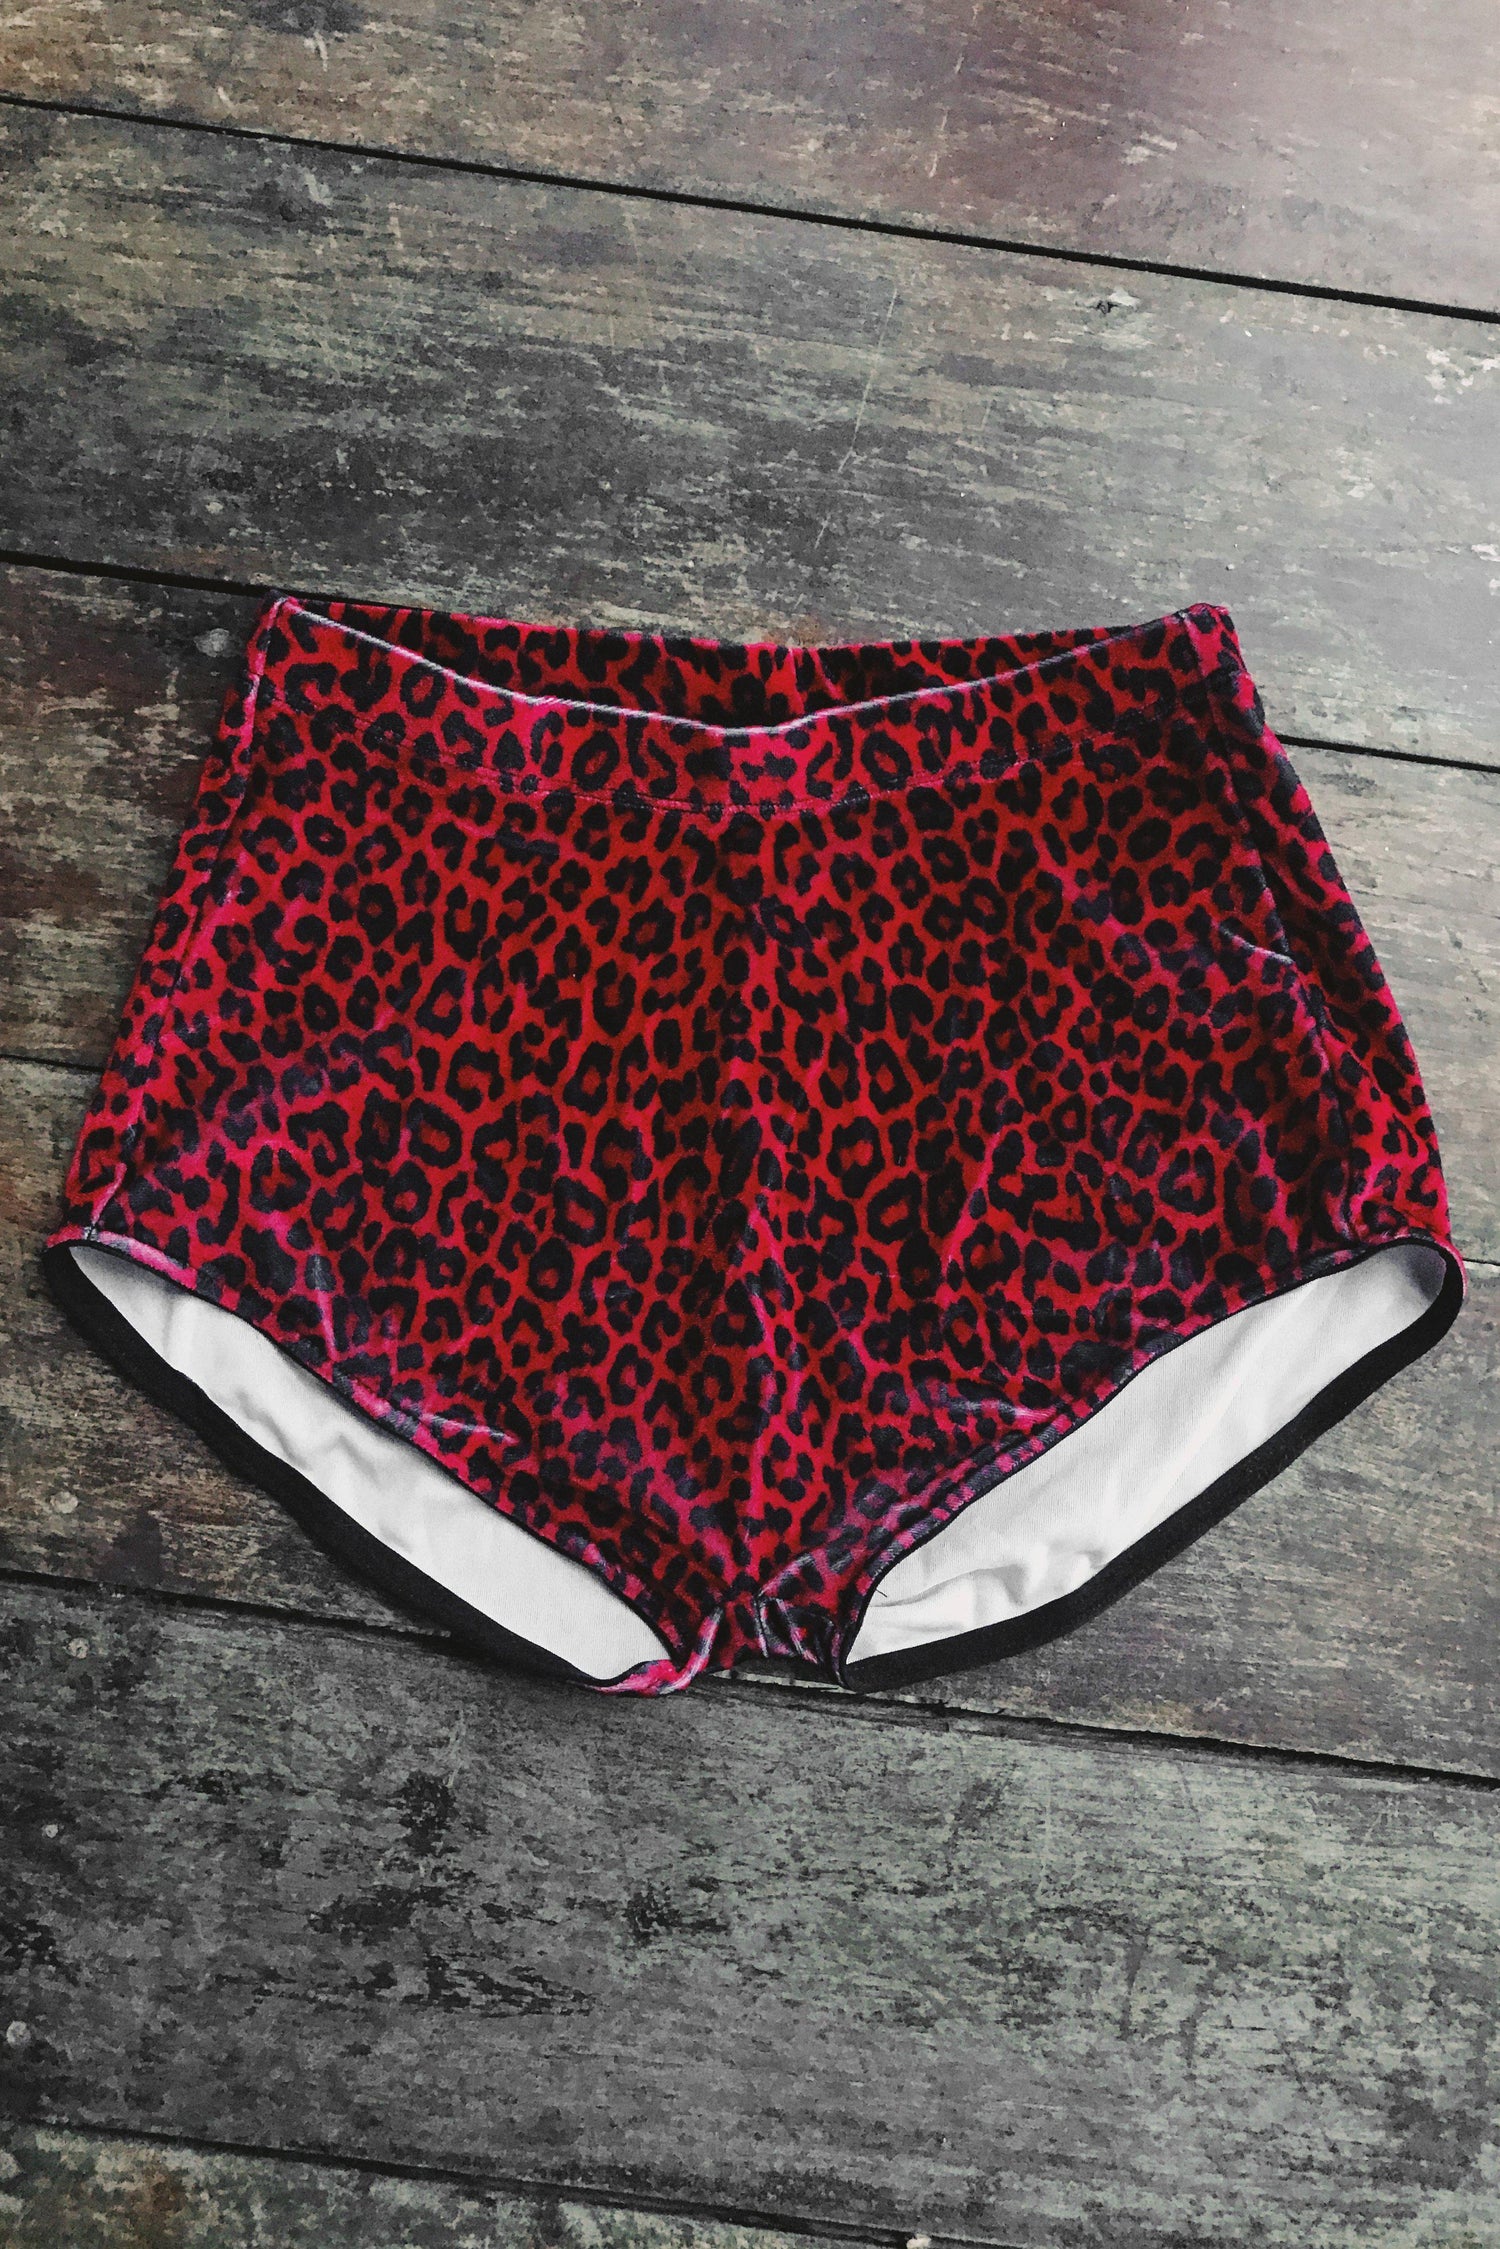 Classic Velvet Hot Shorts・Red Leopard, bottoms, BAD VIBES, BACKBITE